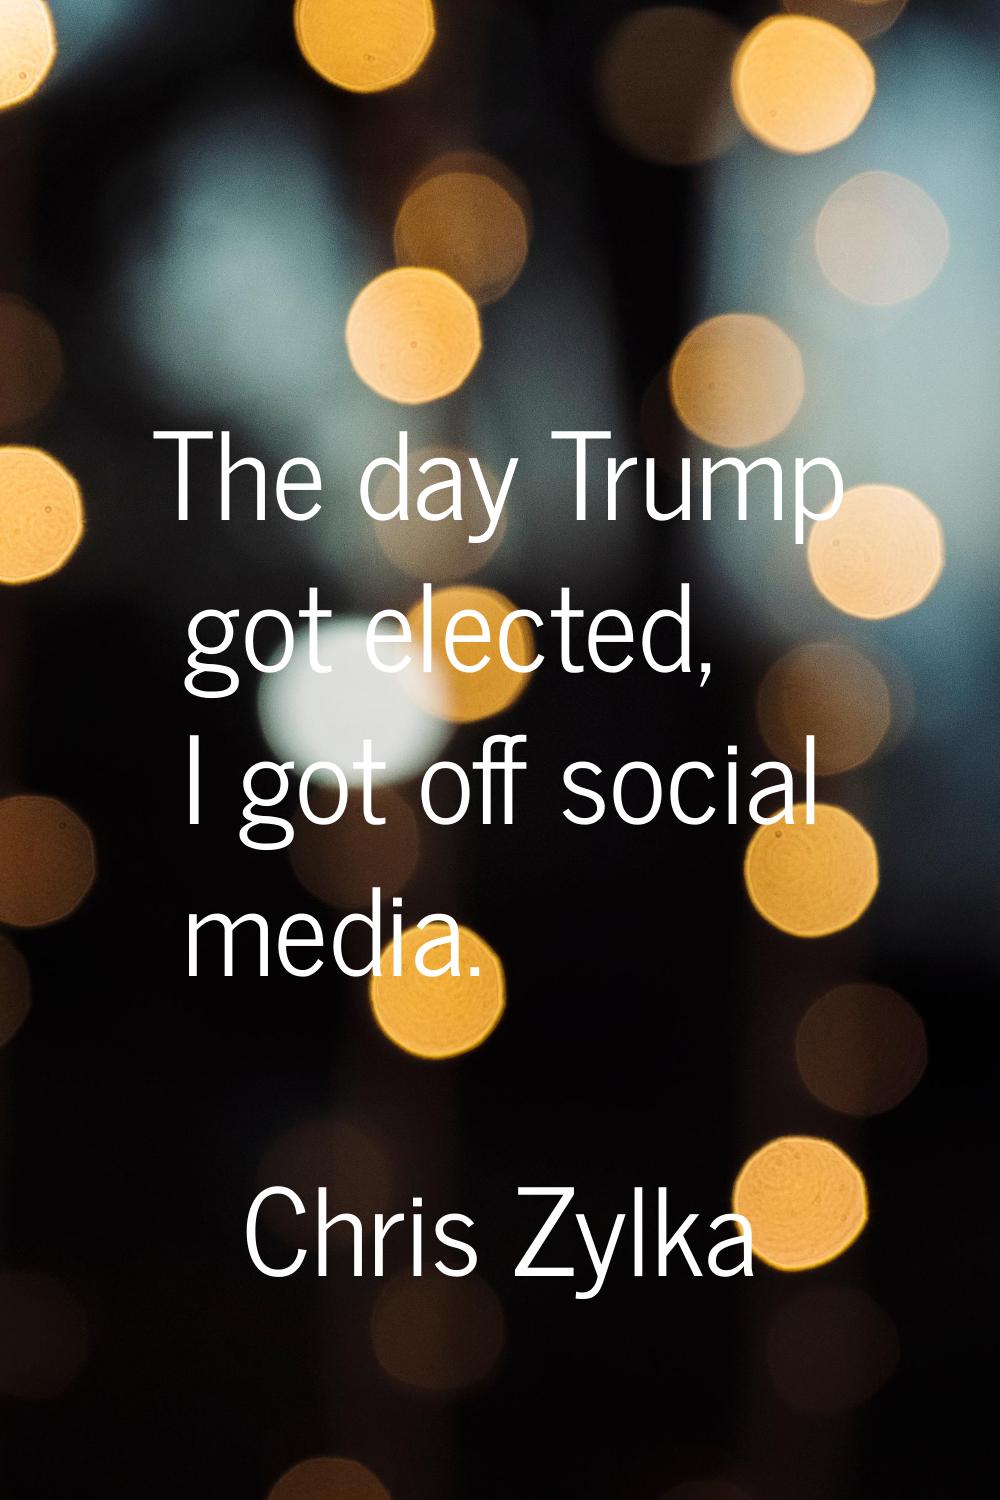 The day Trump got elected, I got off social media.